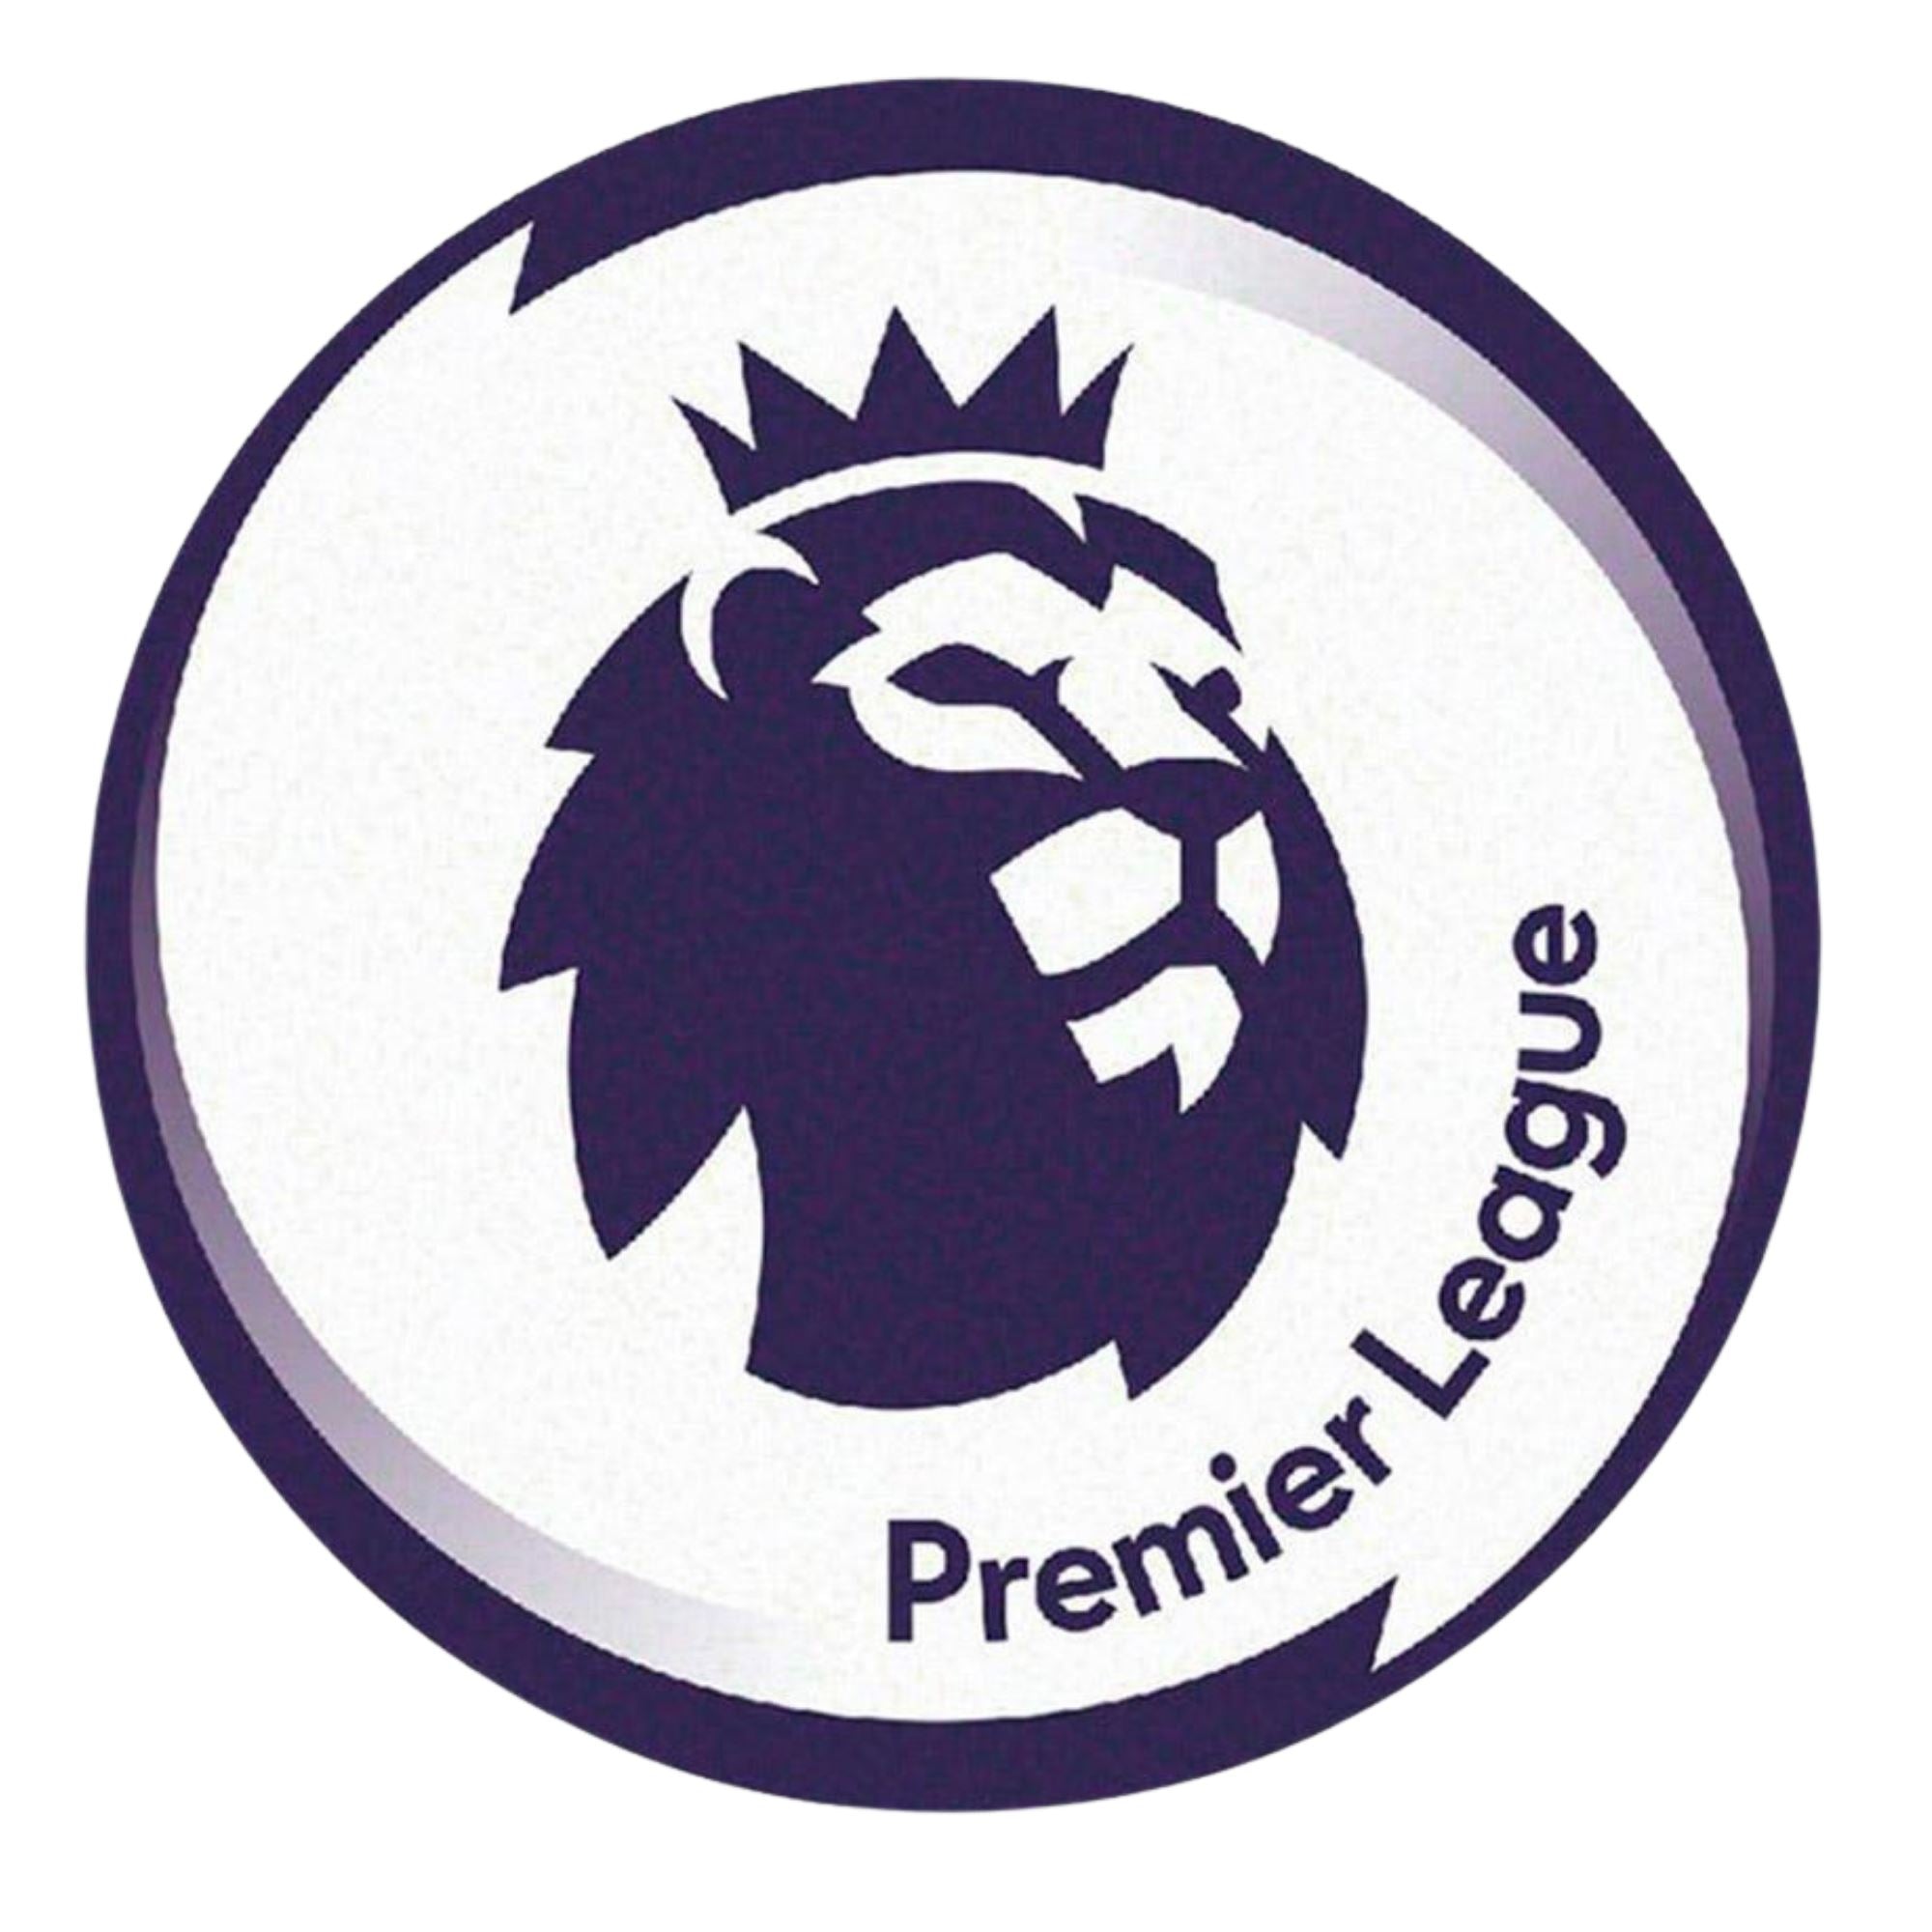 English Premier League Patch - ITASPORT